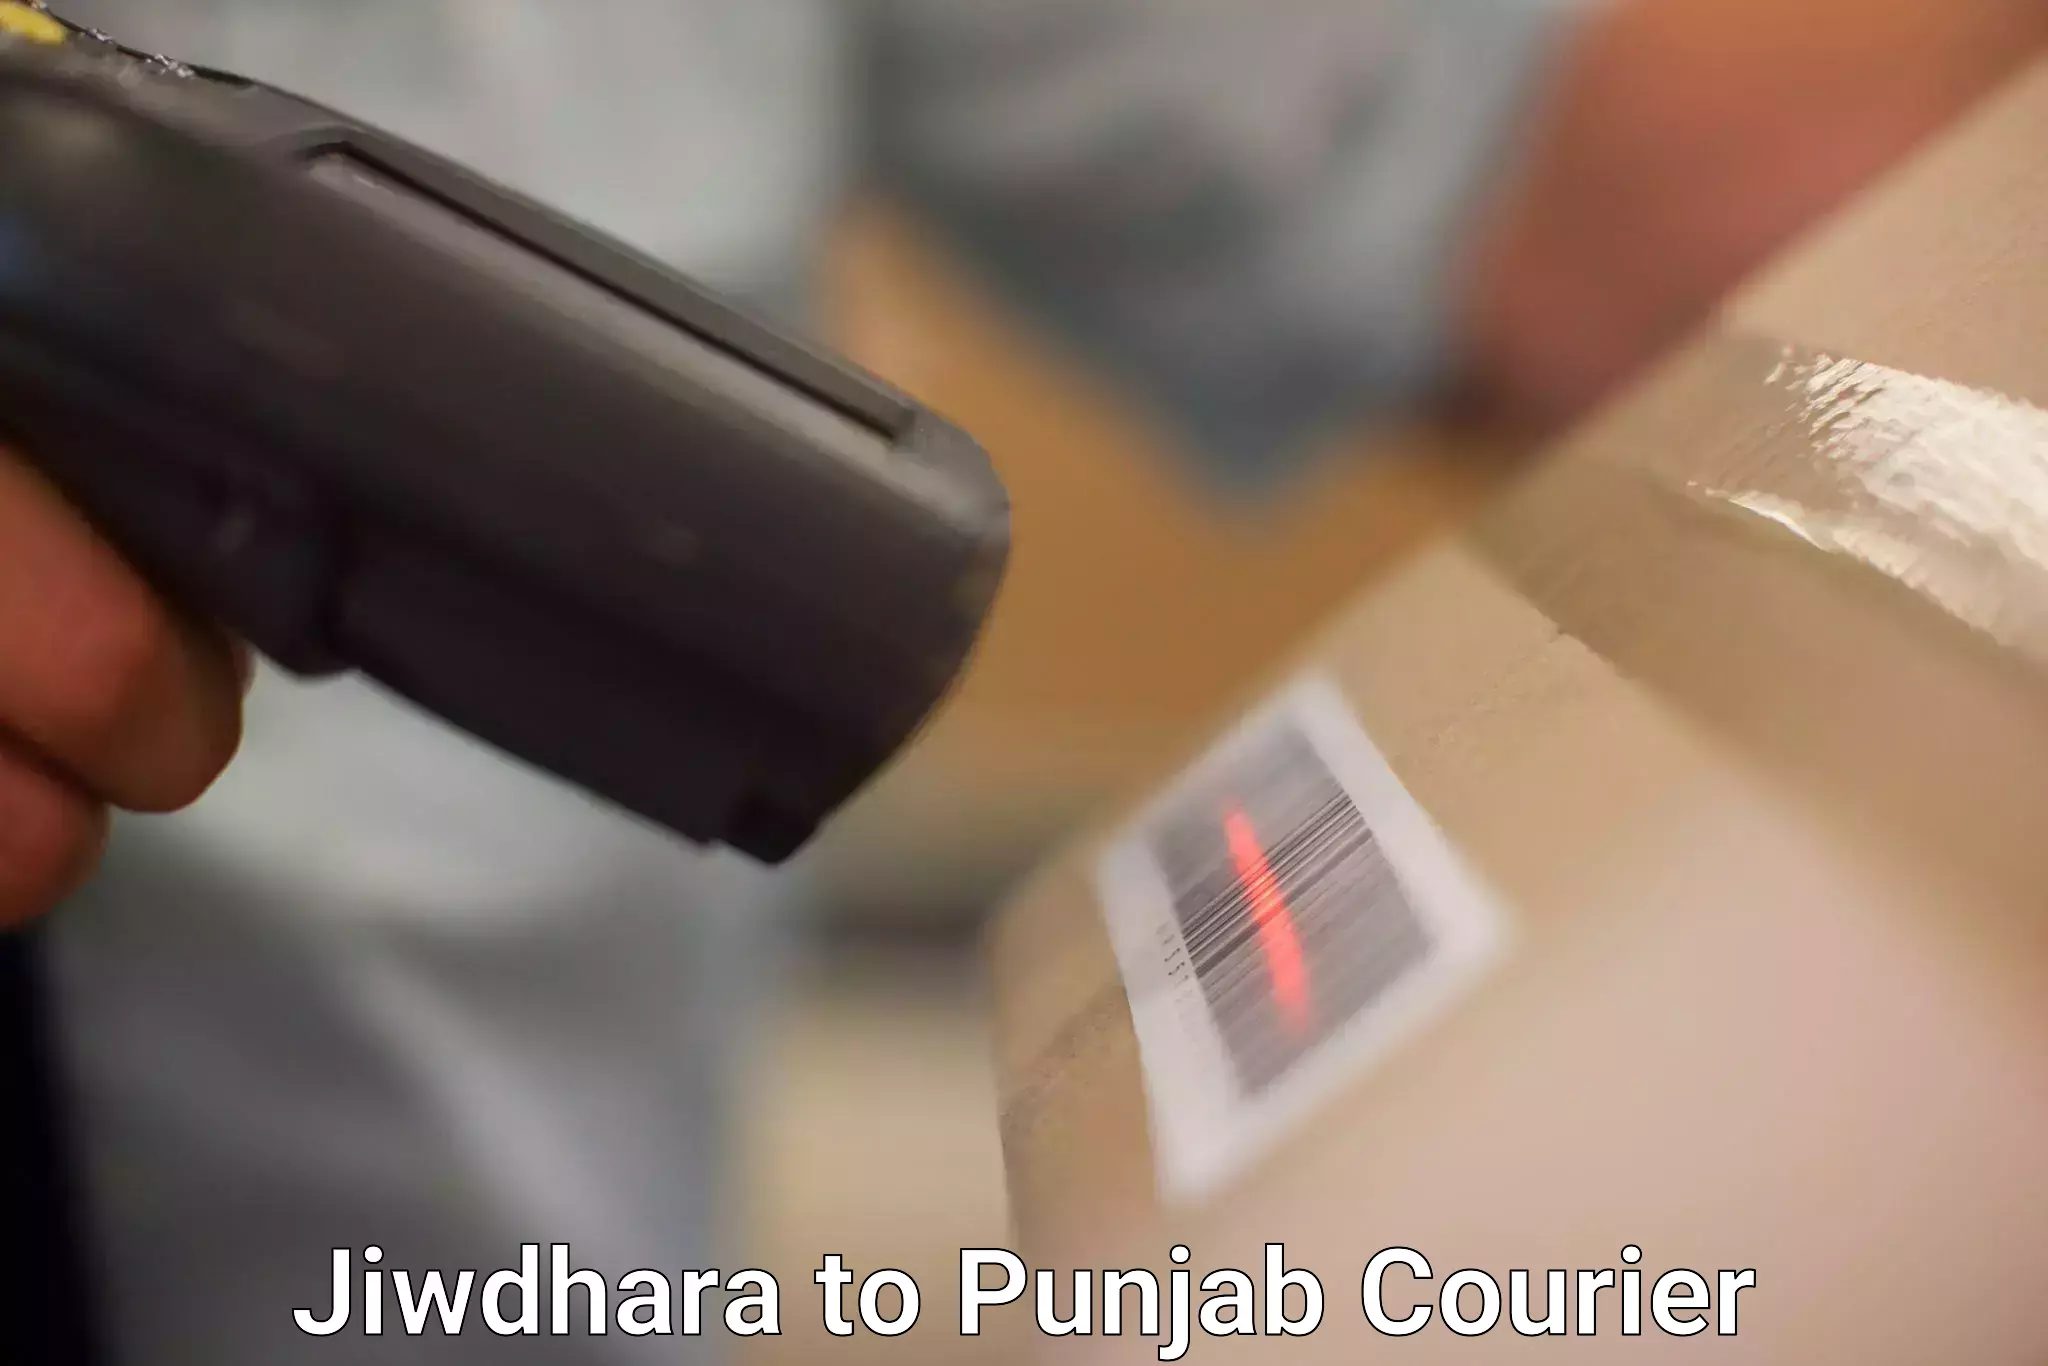 Digital courier platforms Jiwdhara to Punjab